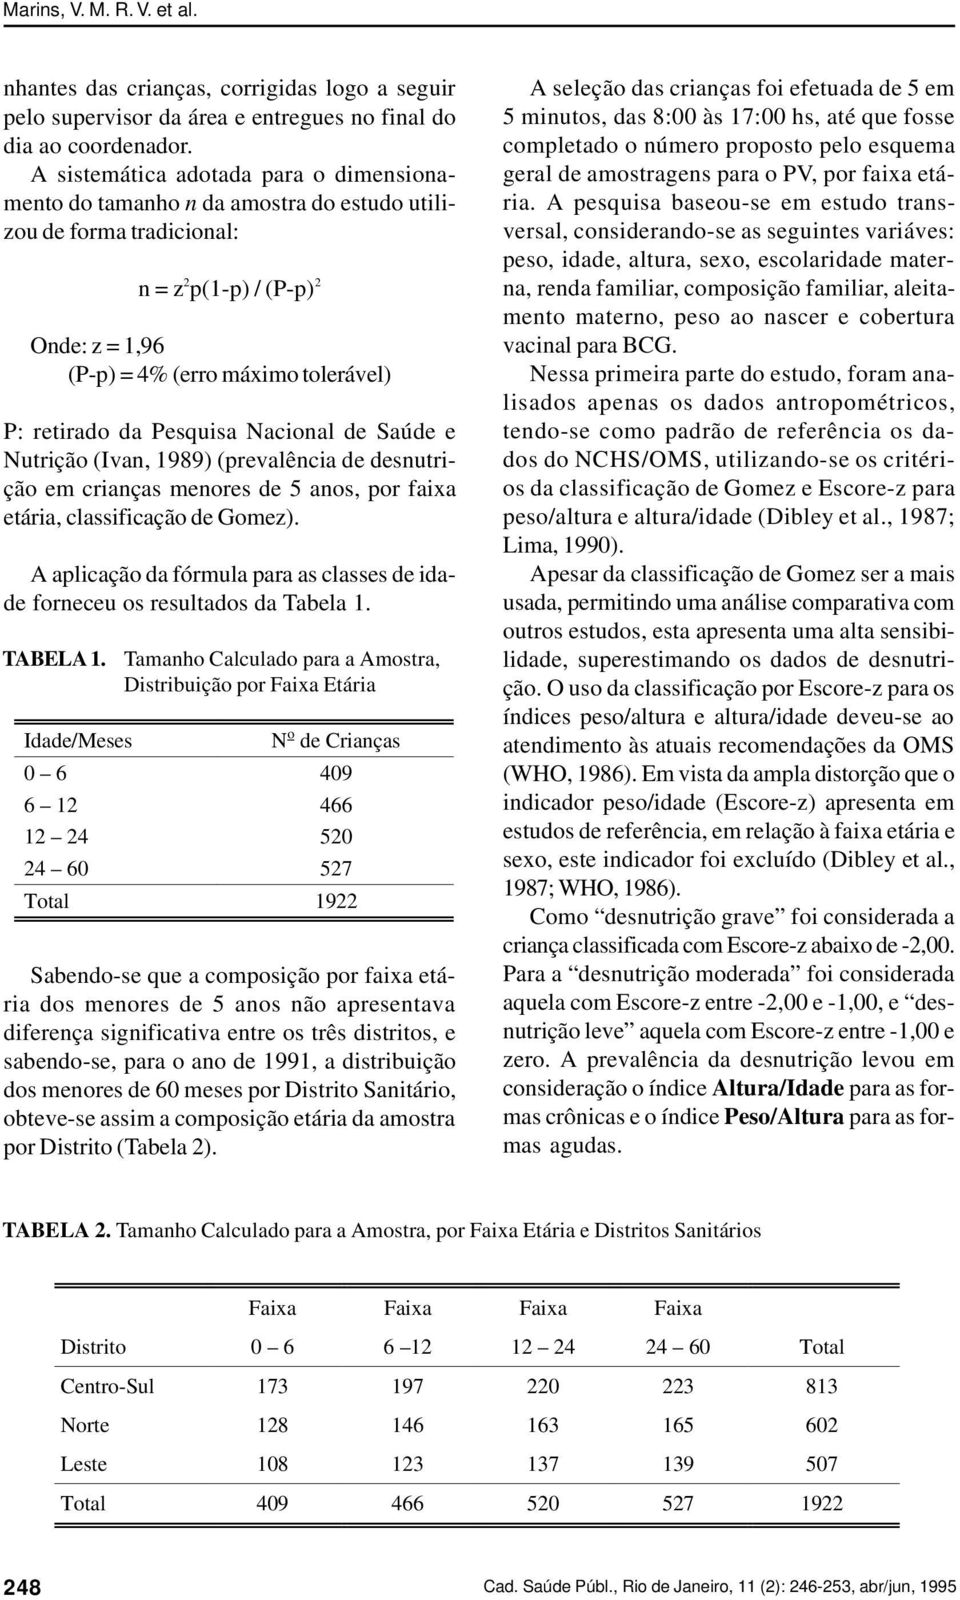 Pesquisa Nacional de Saúde e Nutrição (Ivan, 1989) (prevalência de desnutrição em crianças menores de 5 anos, por faixa etária, classificação de Gomez).